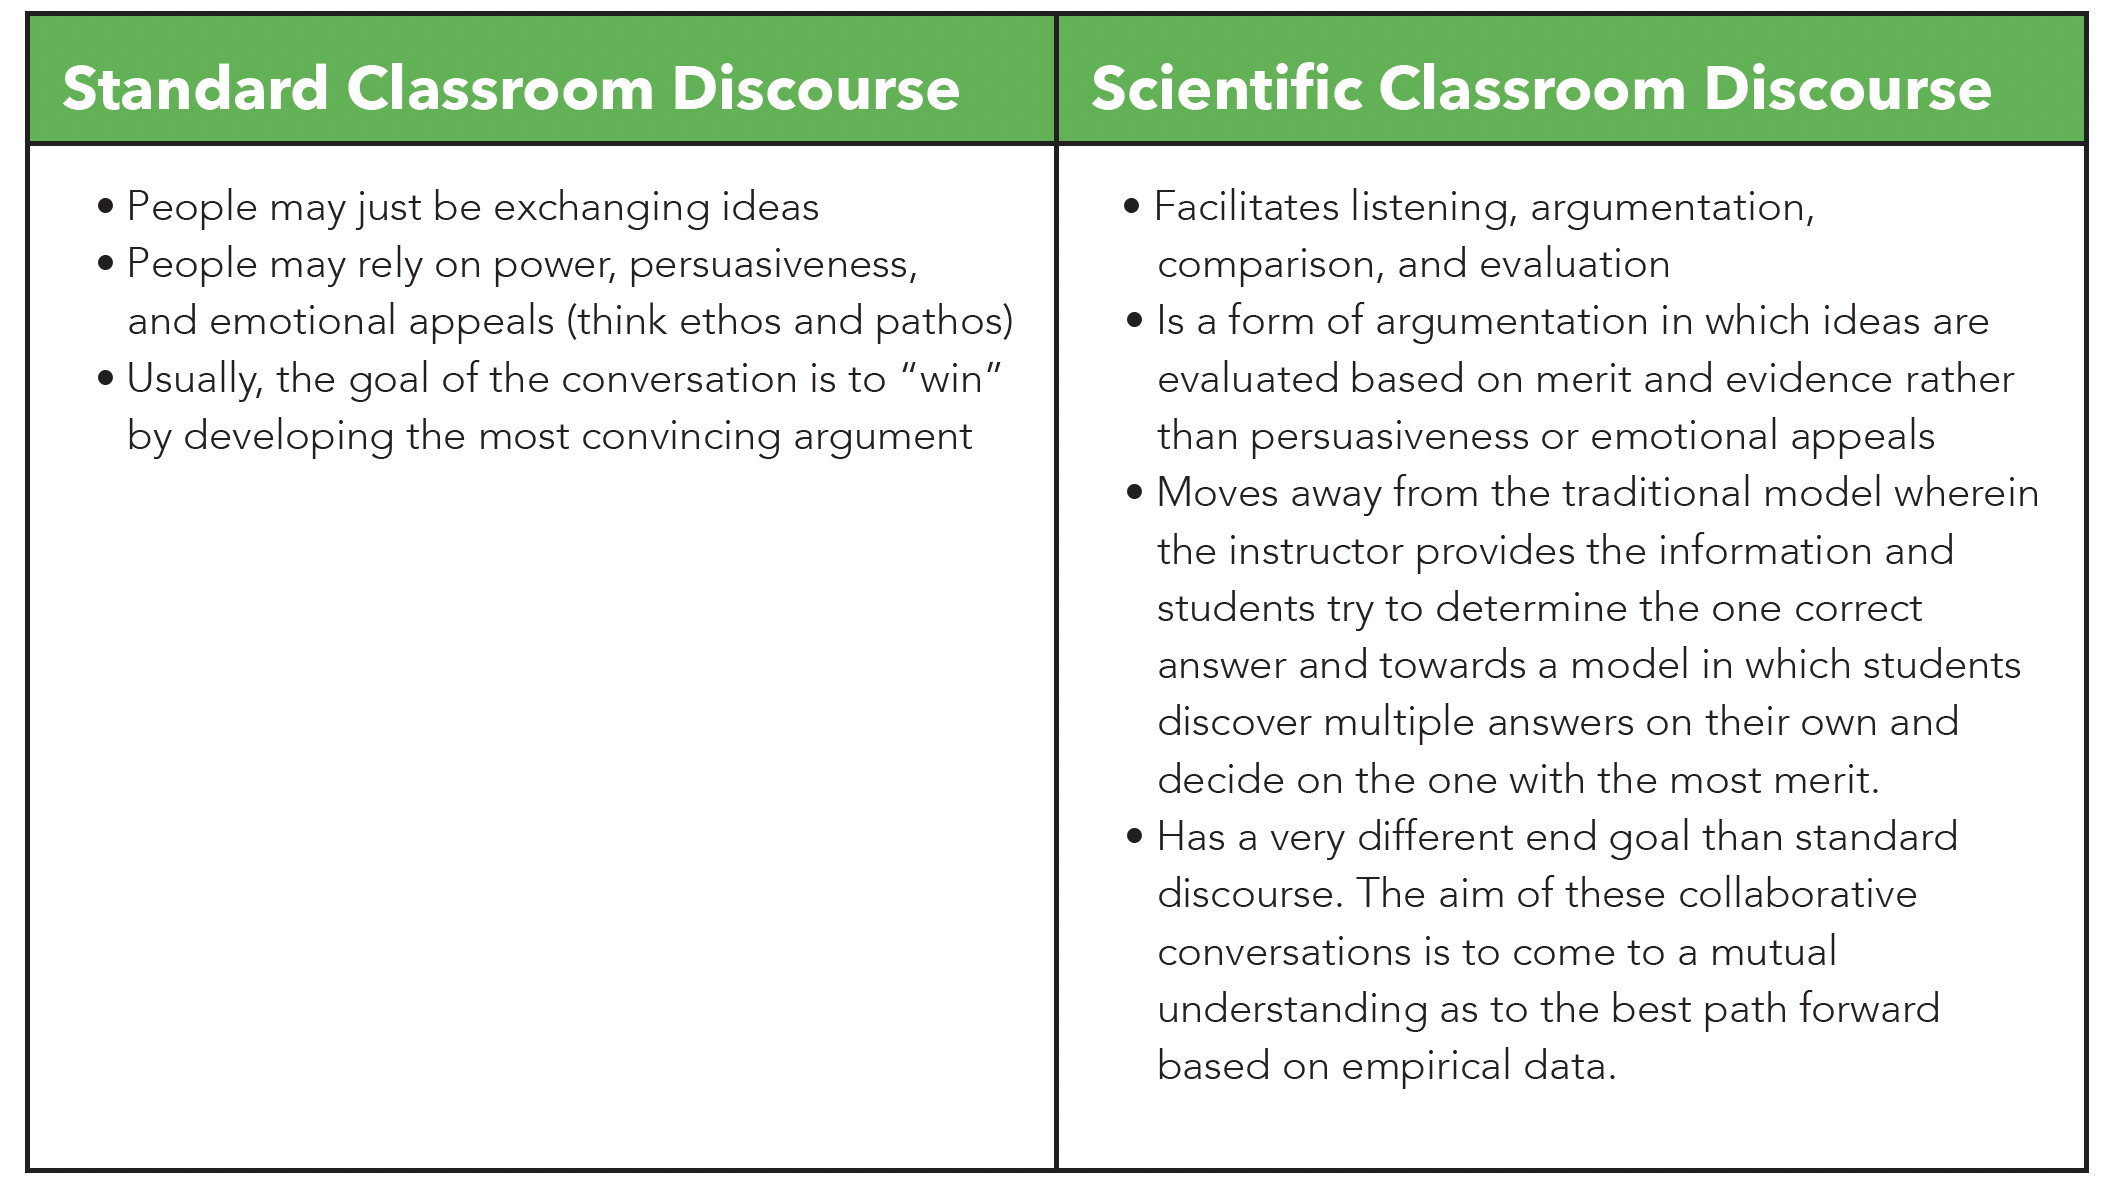 scientific-discourse-for-steam-education